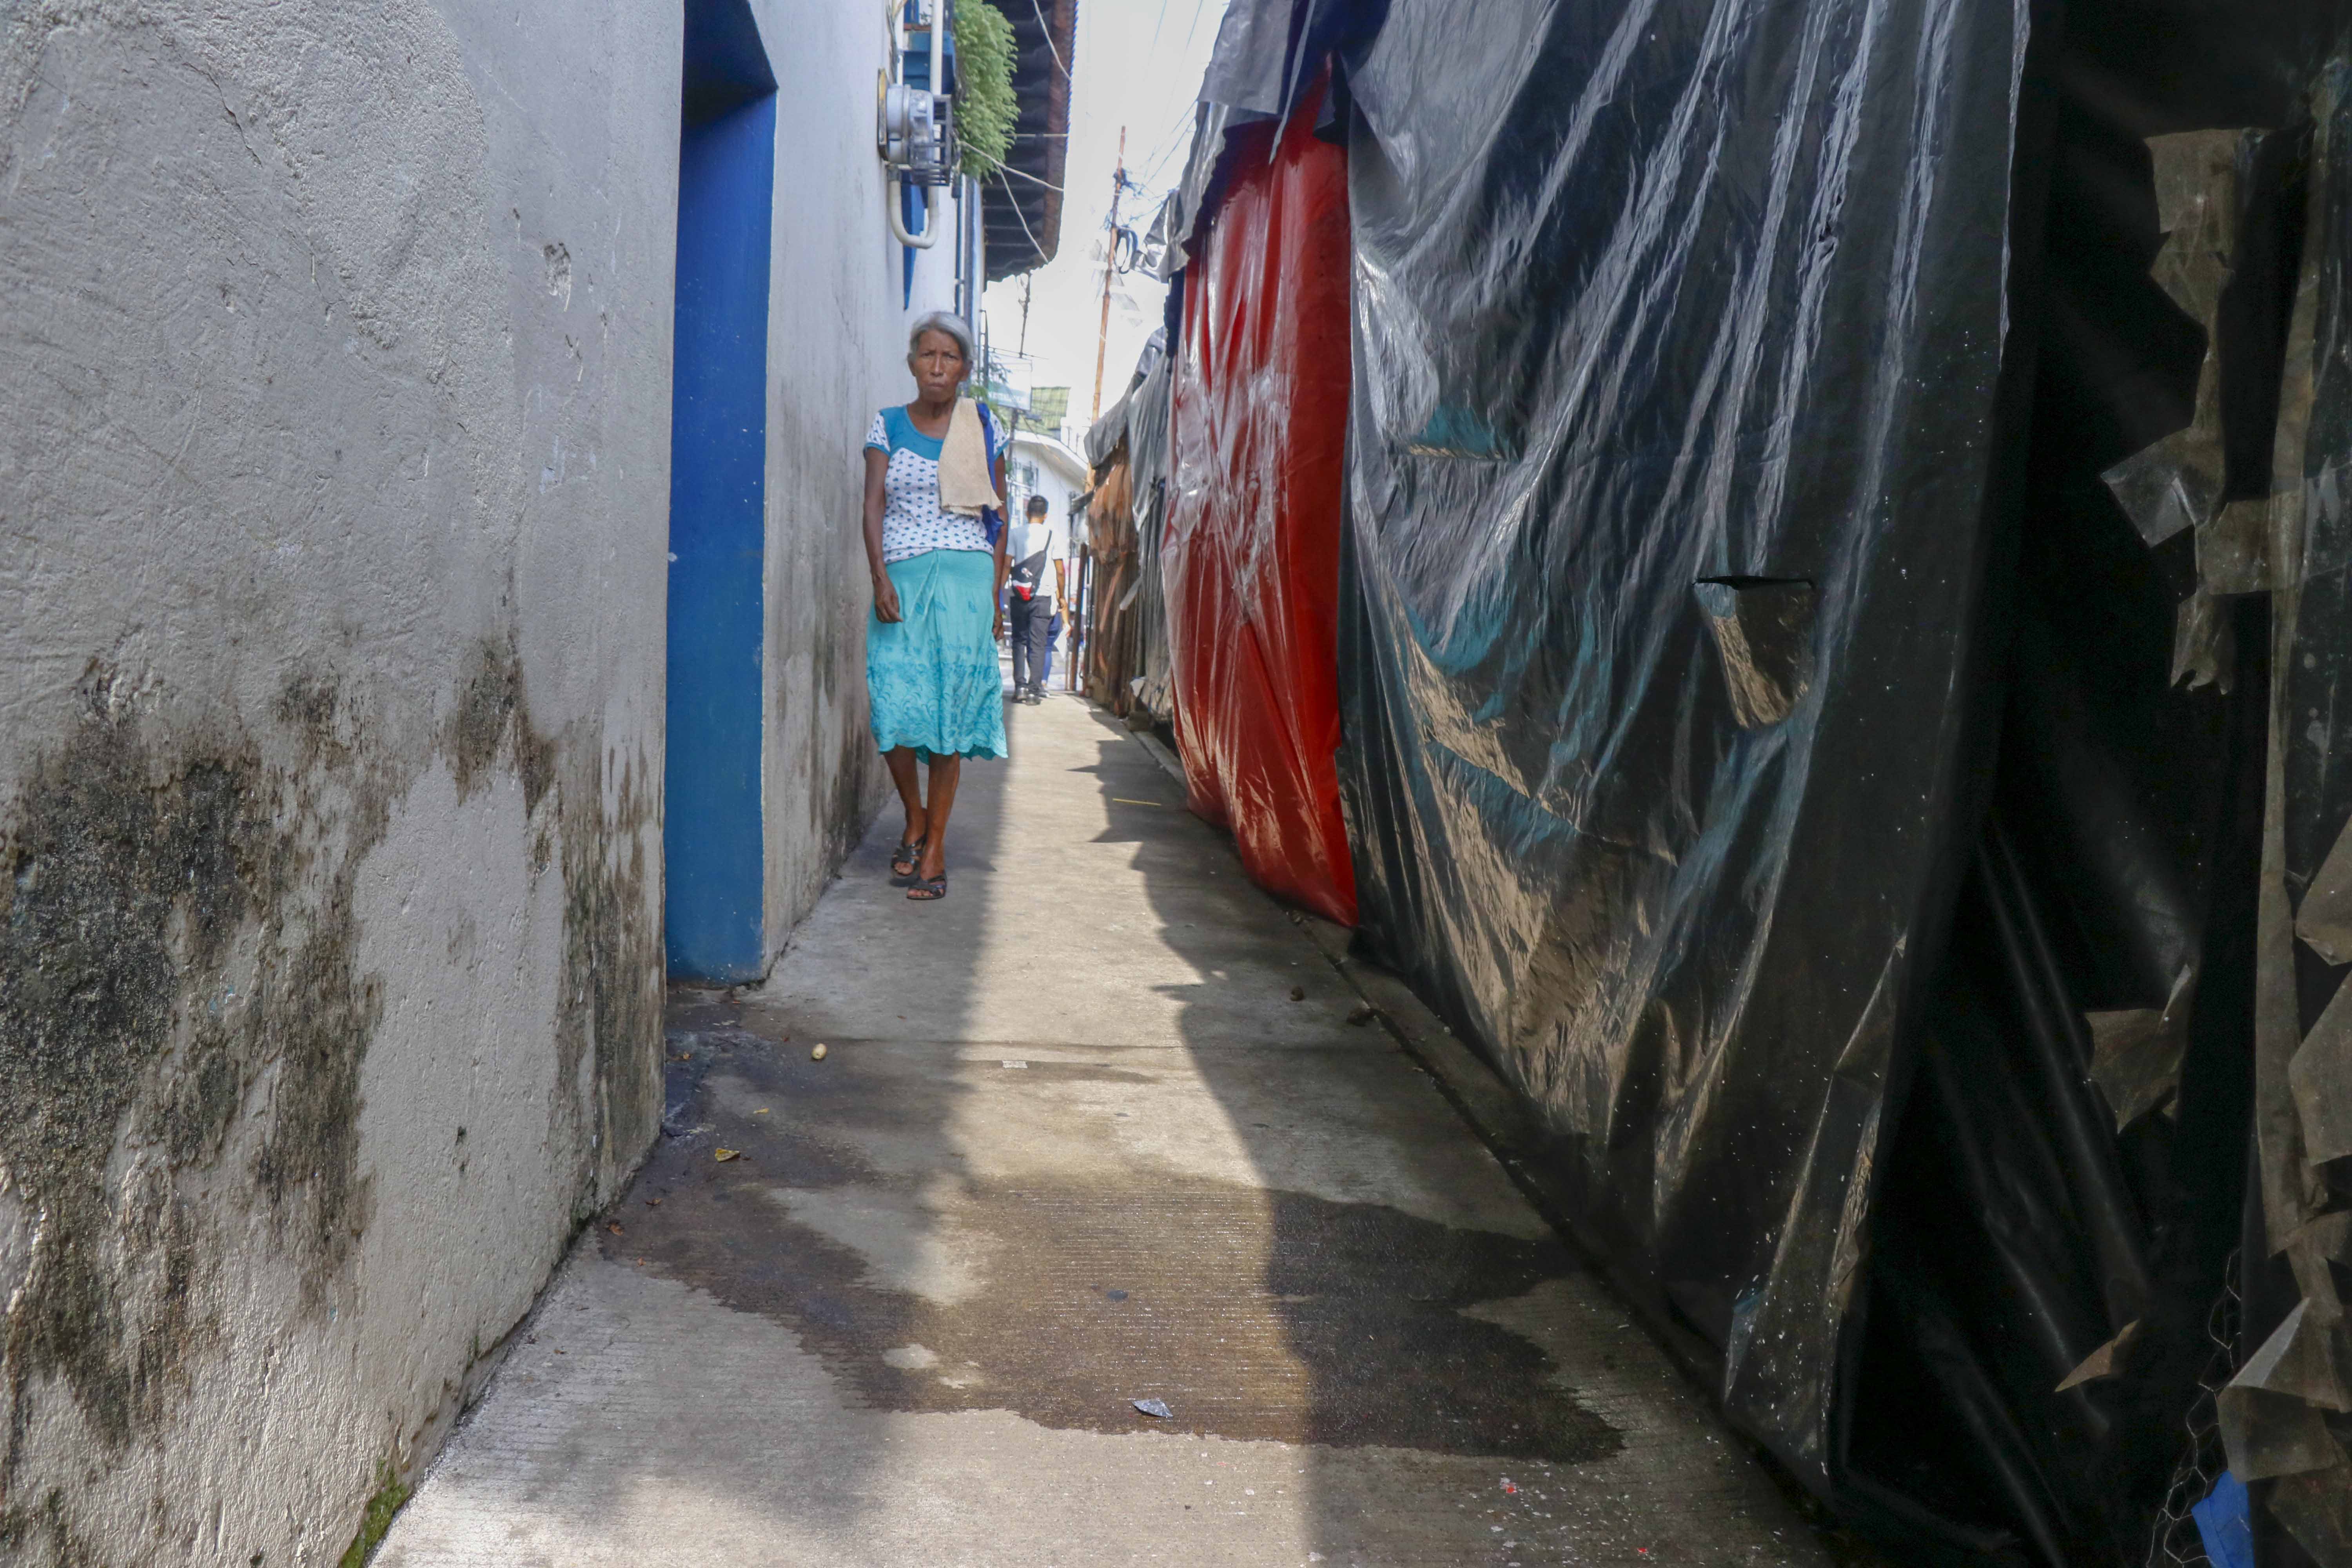 Personas caminan en calle contaminada, en la zona 1 de Retalhuleu. (Foto Prensa Libre: Esaú Colomo)